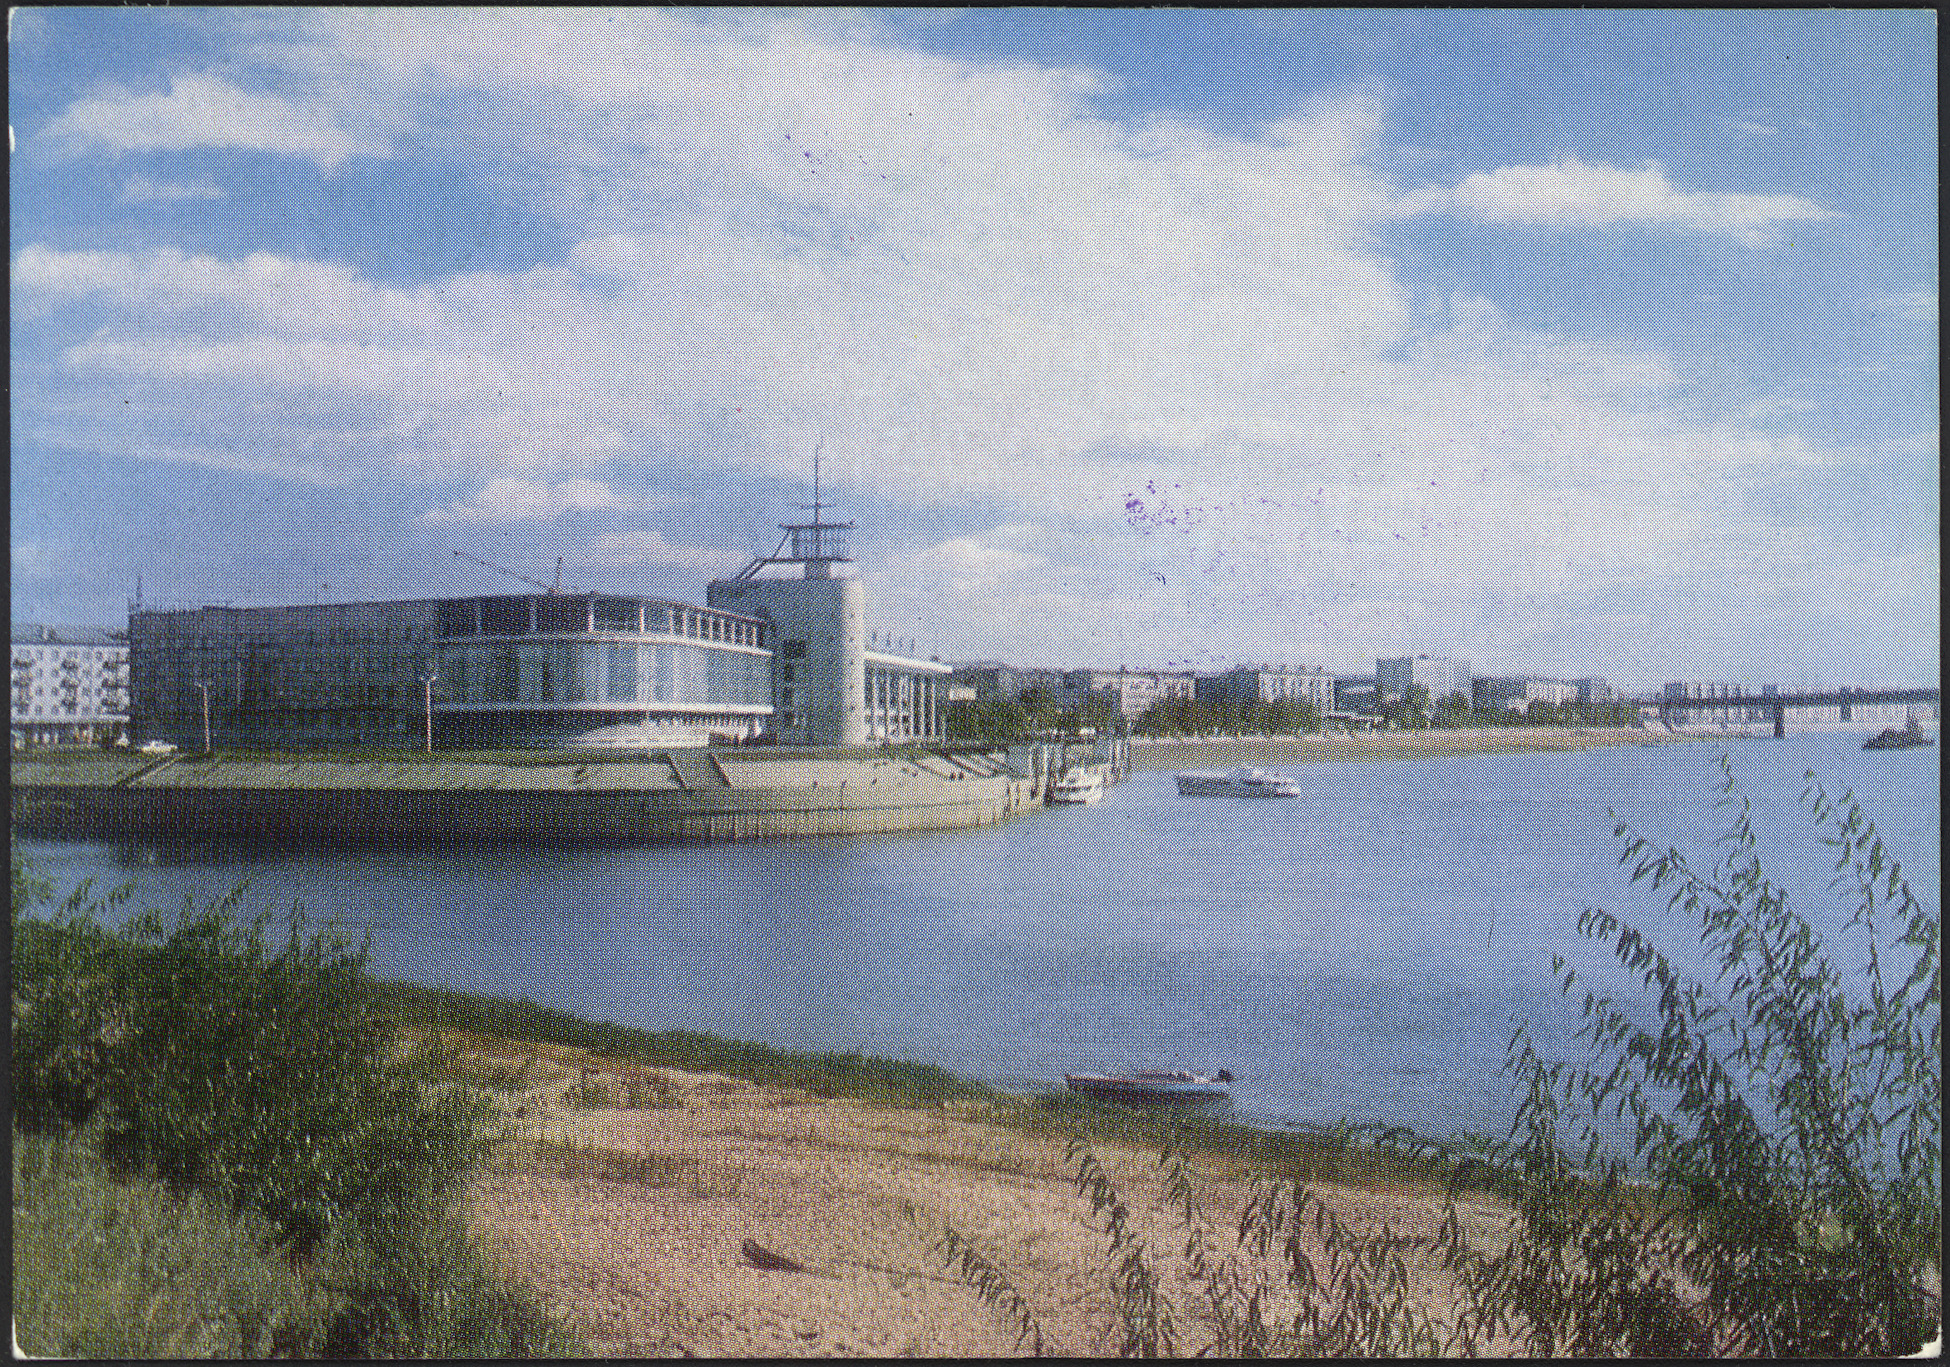 речной вокзал омск